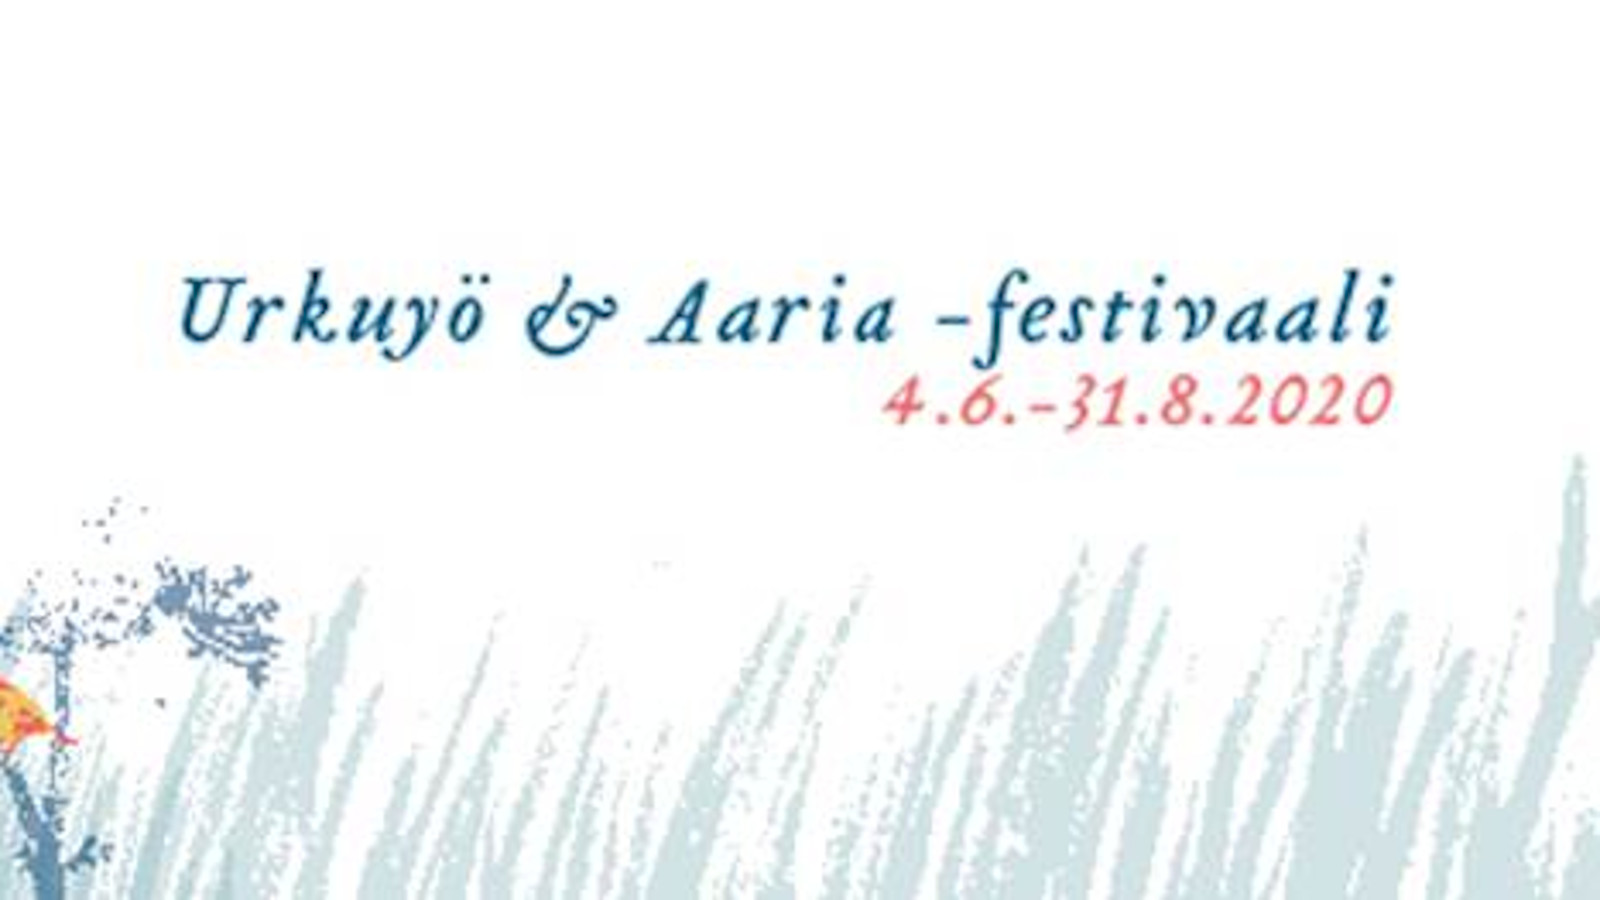 Kuvassa on Urkuyö & Aaria 2020 juliste, jonka pohja on vaalea ja siinä on nimen ja ajan alla piirrettyjä heiniä.